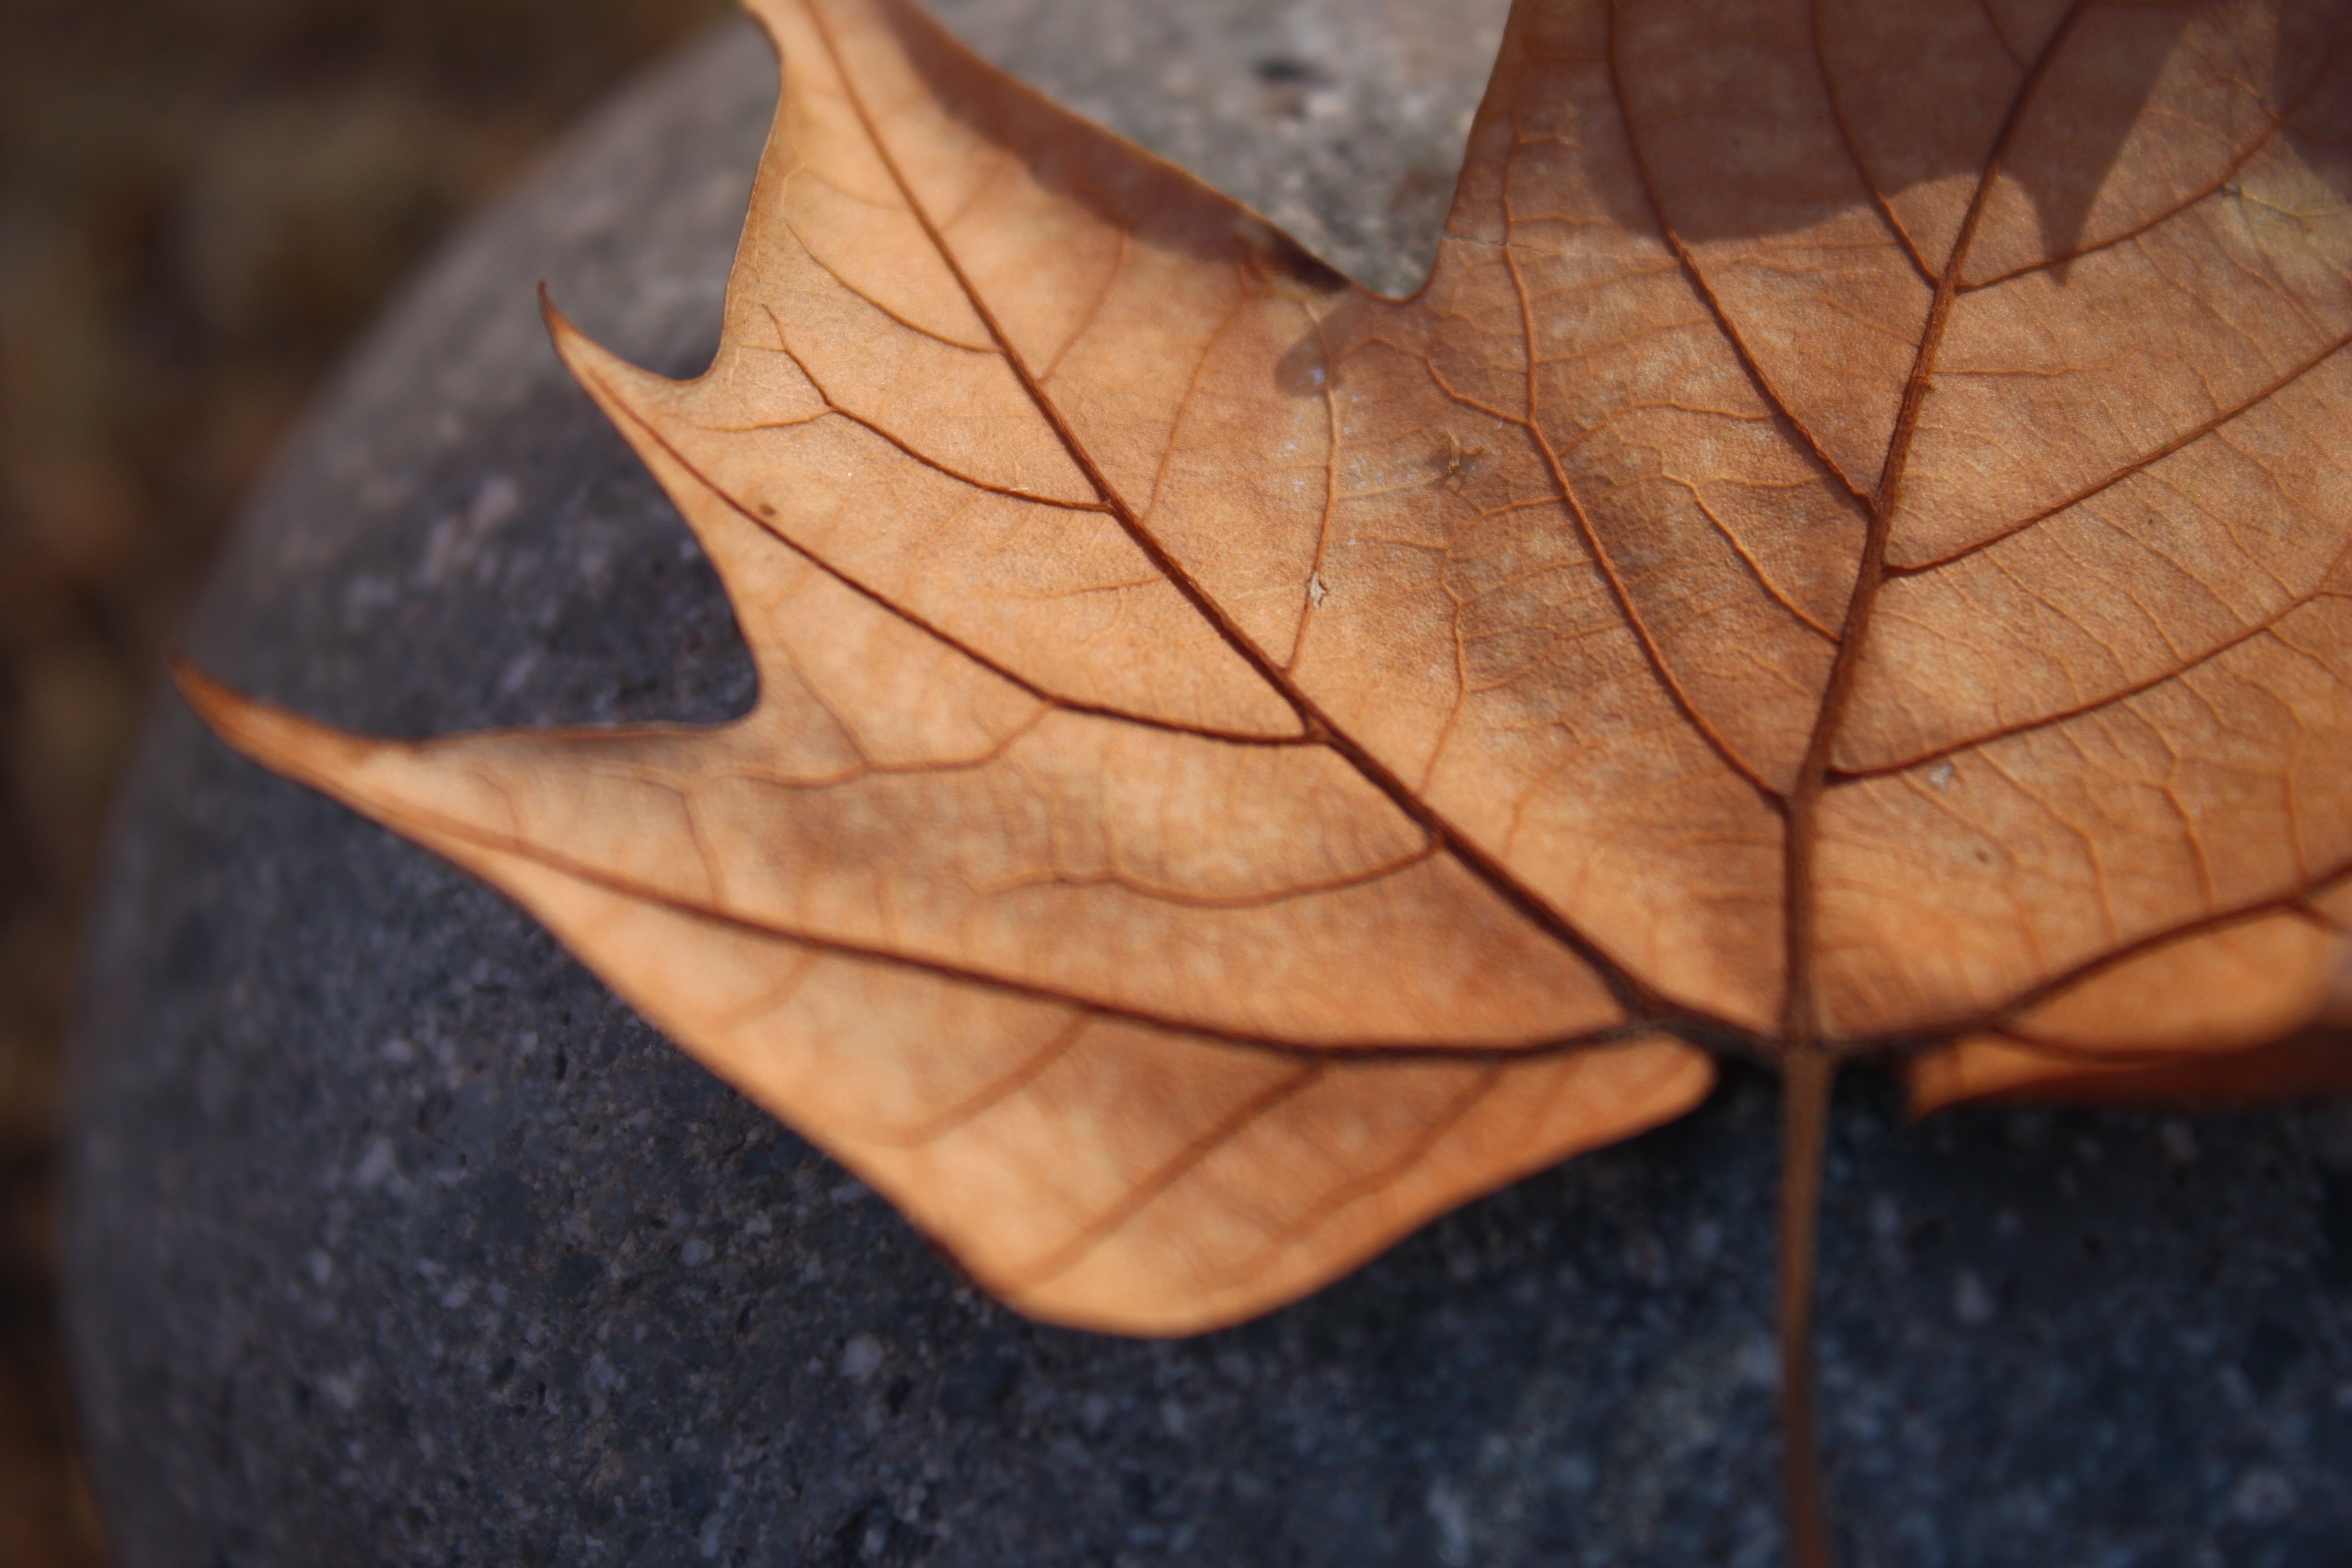 maple leaf